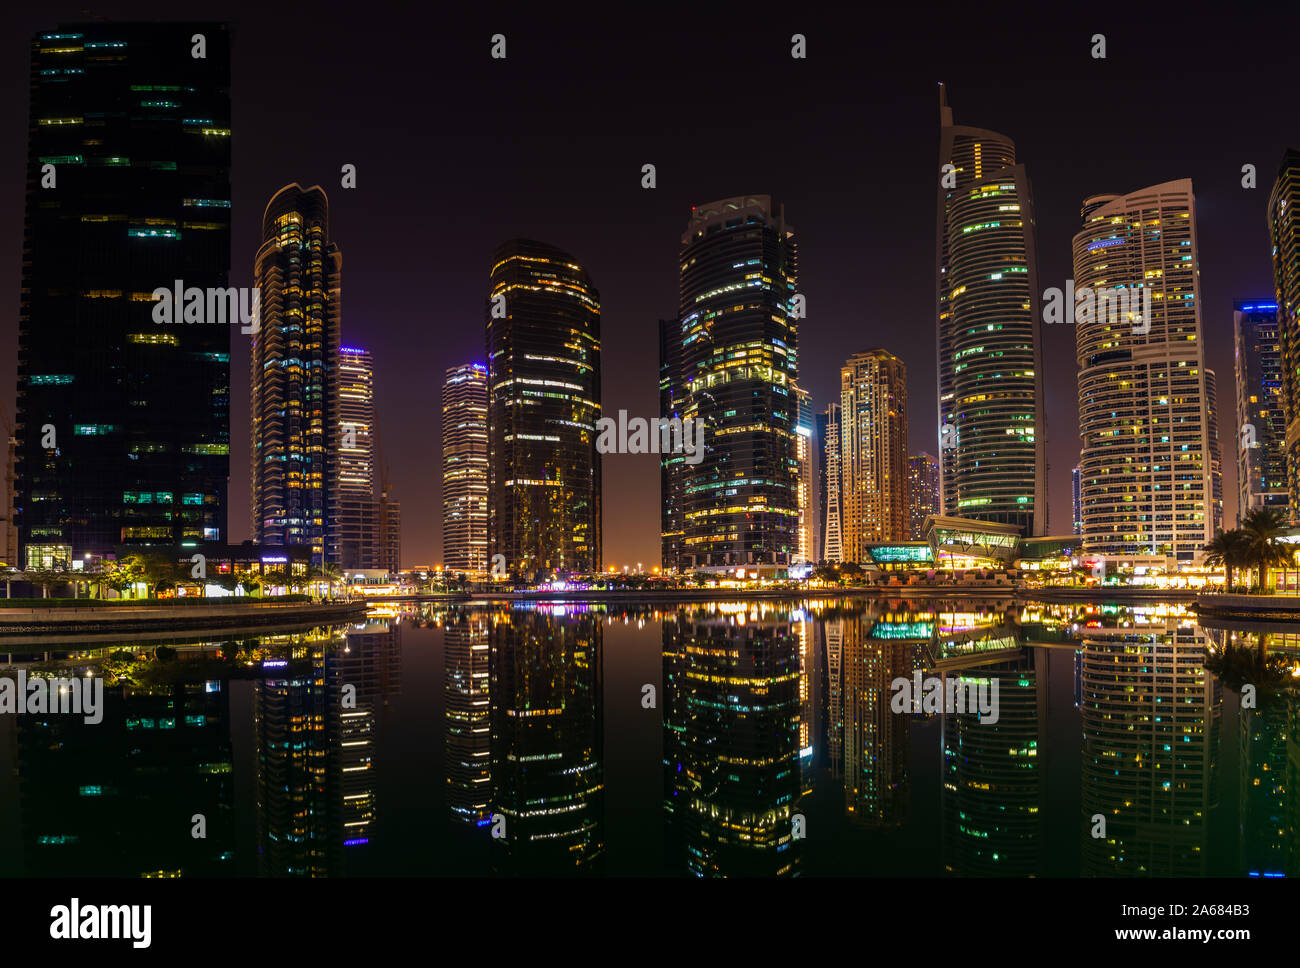 25 octobre 2019 ; Jumeirah Lake Towers, Dubaï, Émirats arabes unis ; vue sur les gratte-ciel avec leur réflexion sur la surface d'un lac dans la nuit. Banque D'Images